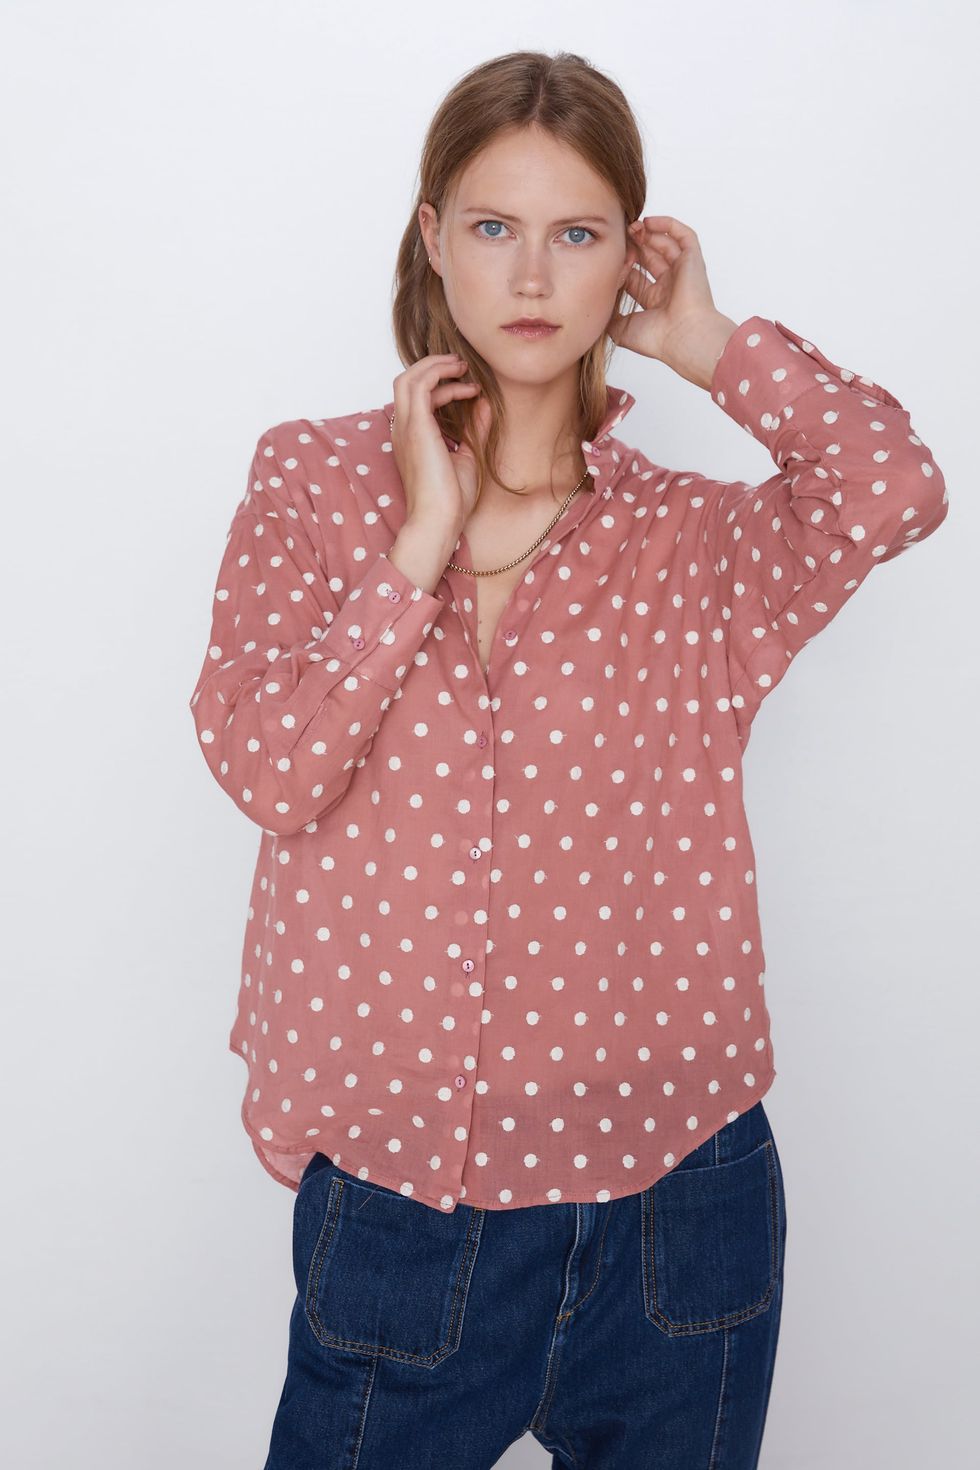 La camisa de Zara que ha enamorado las redactoras de Elle